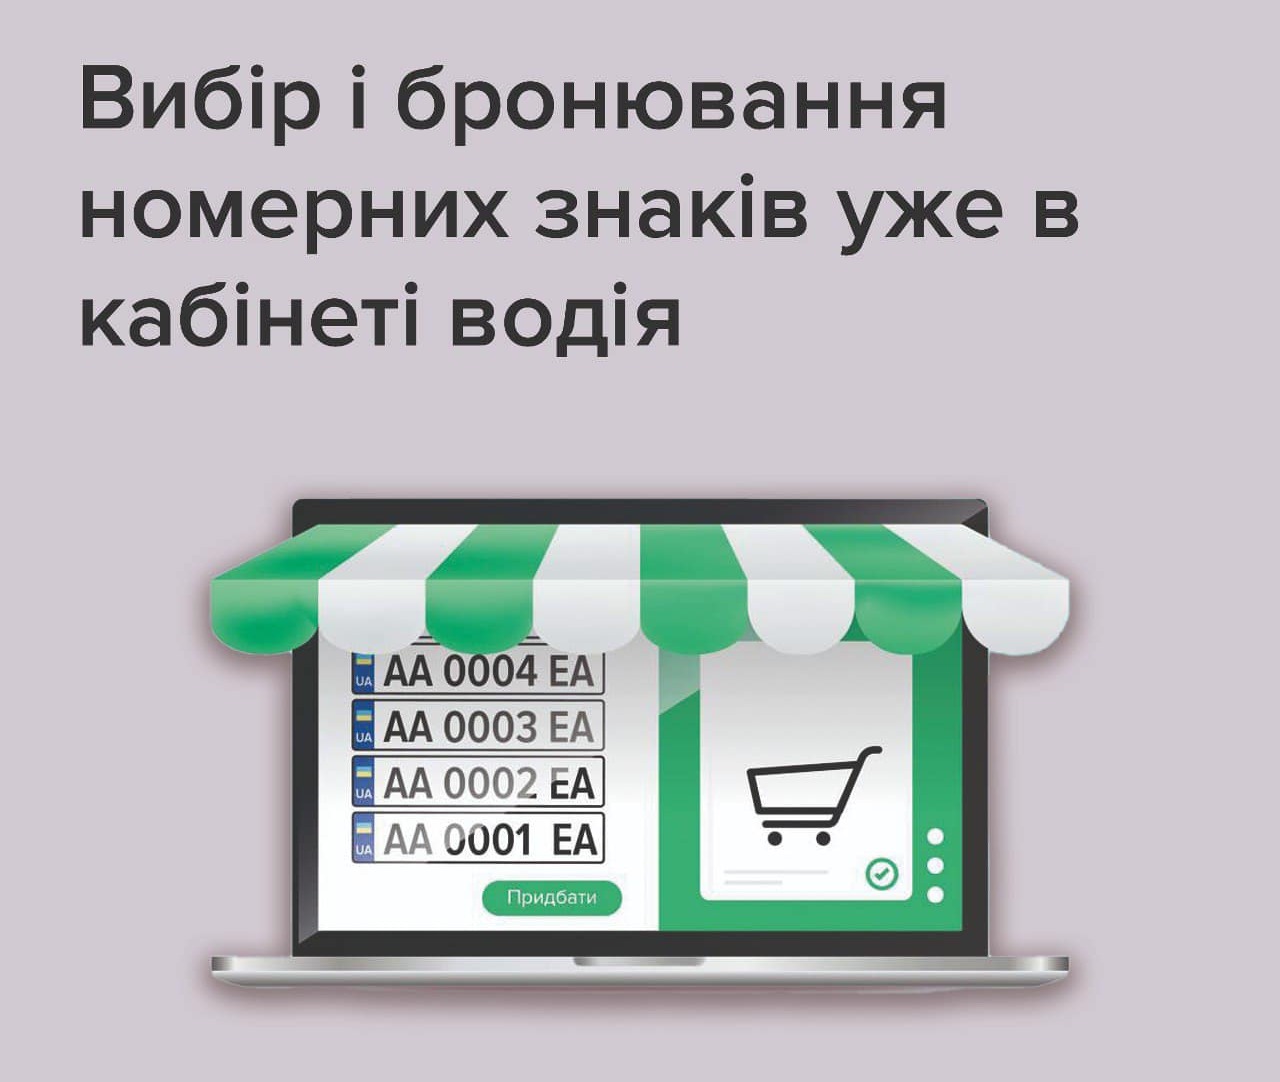 В українців з'явилася можливість обирати та бронювати номерні знаки для авто онлайн